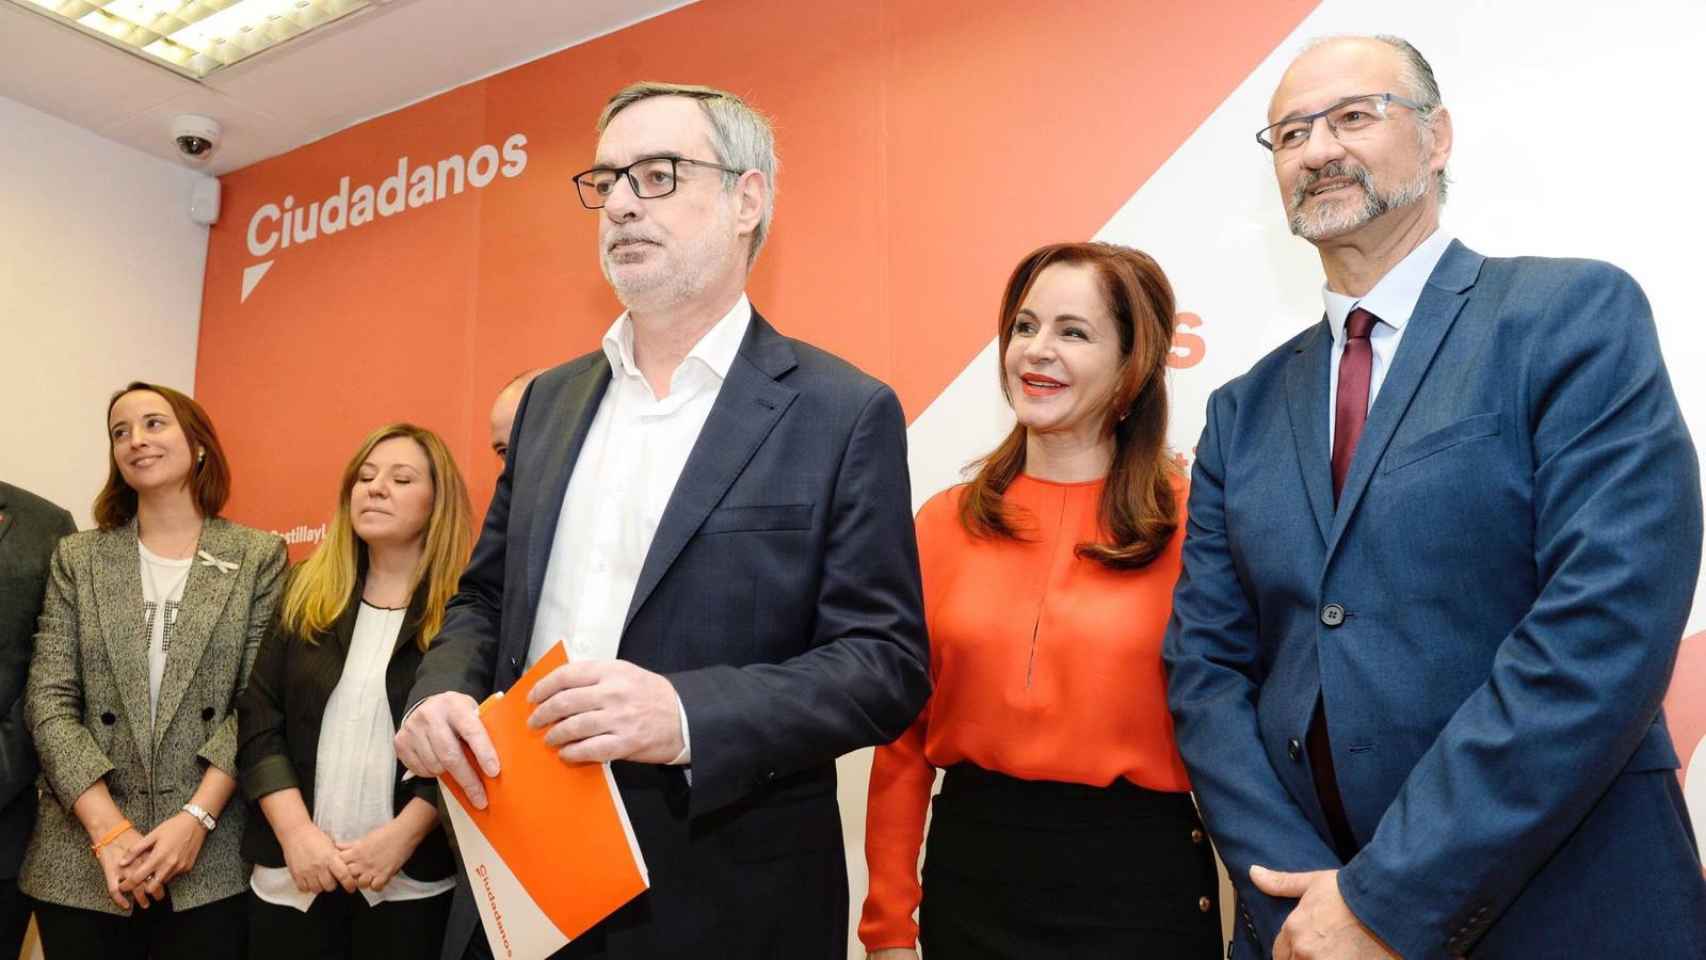 La candidata de Ciudadanos a las primarias apoyada por Albert Rivera, Silvia Clemente, junto a José Manuel Villegas / EFE